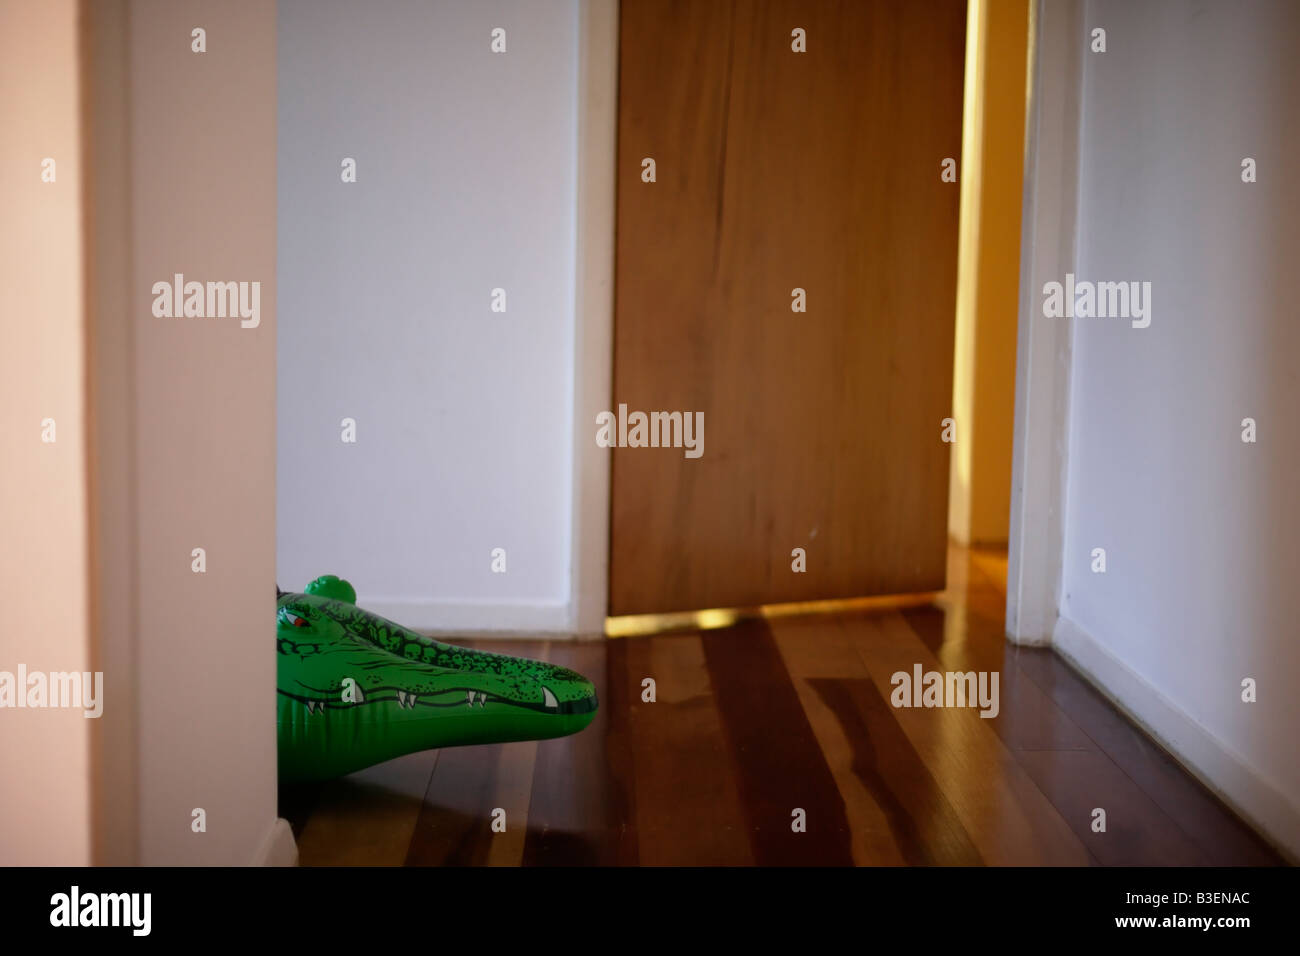 Série crocodile gonflable se cache dans le hall Banque D'Images